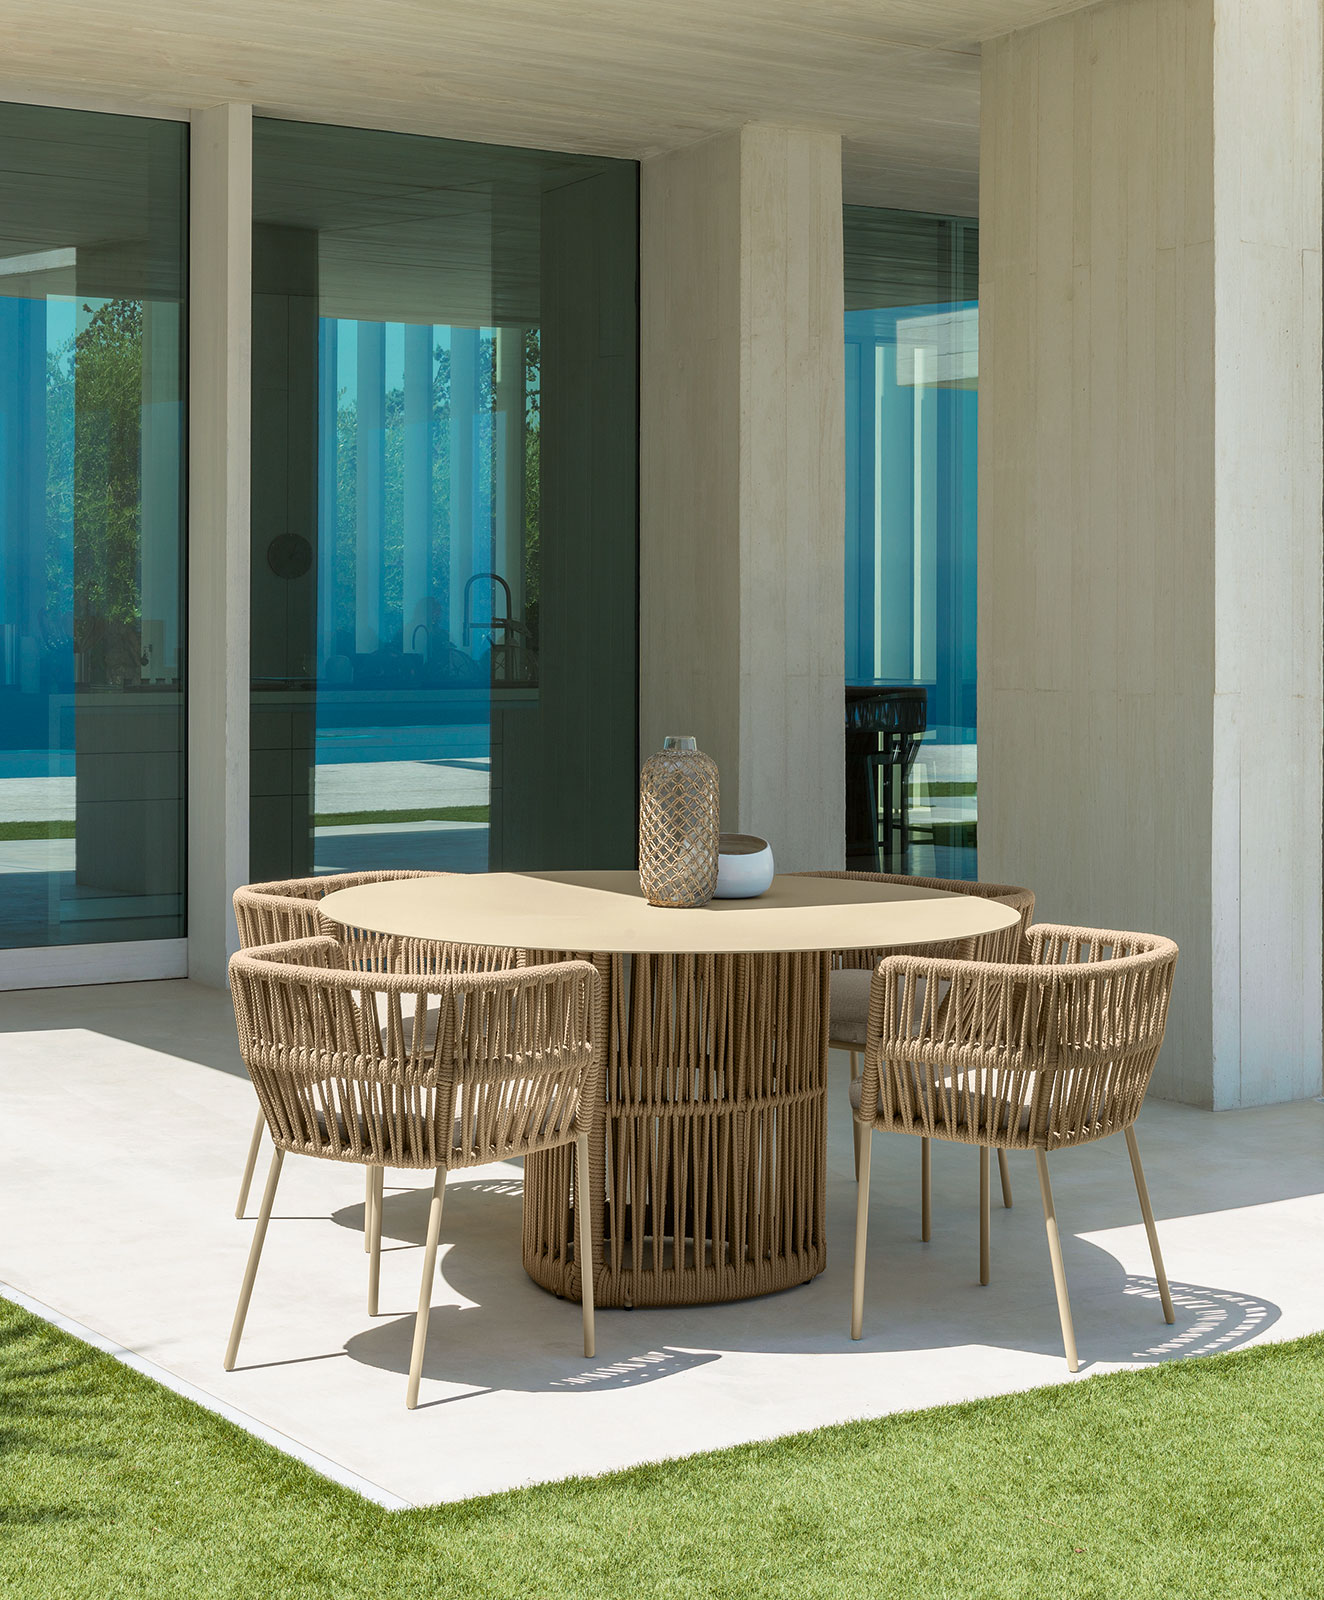 Poltroncina da esterno in alluminio e corda intrecciata sintetica beige. Comprate online mobili da giardino di alta qualità, design e con consegna gratuita.